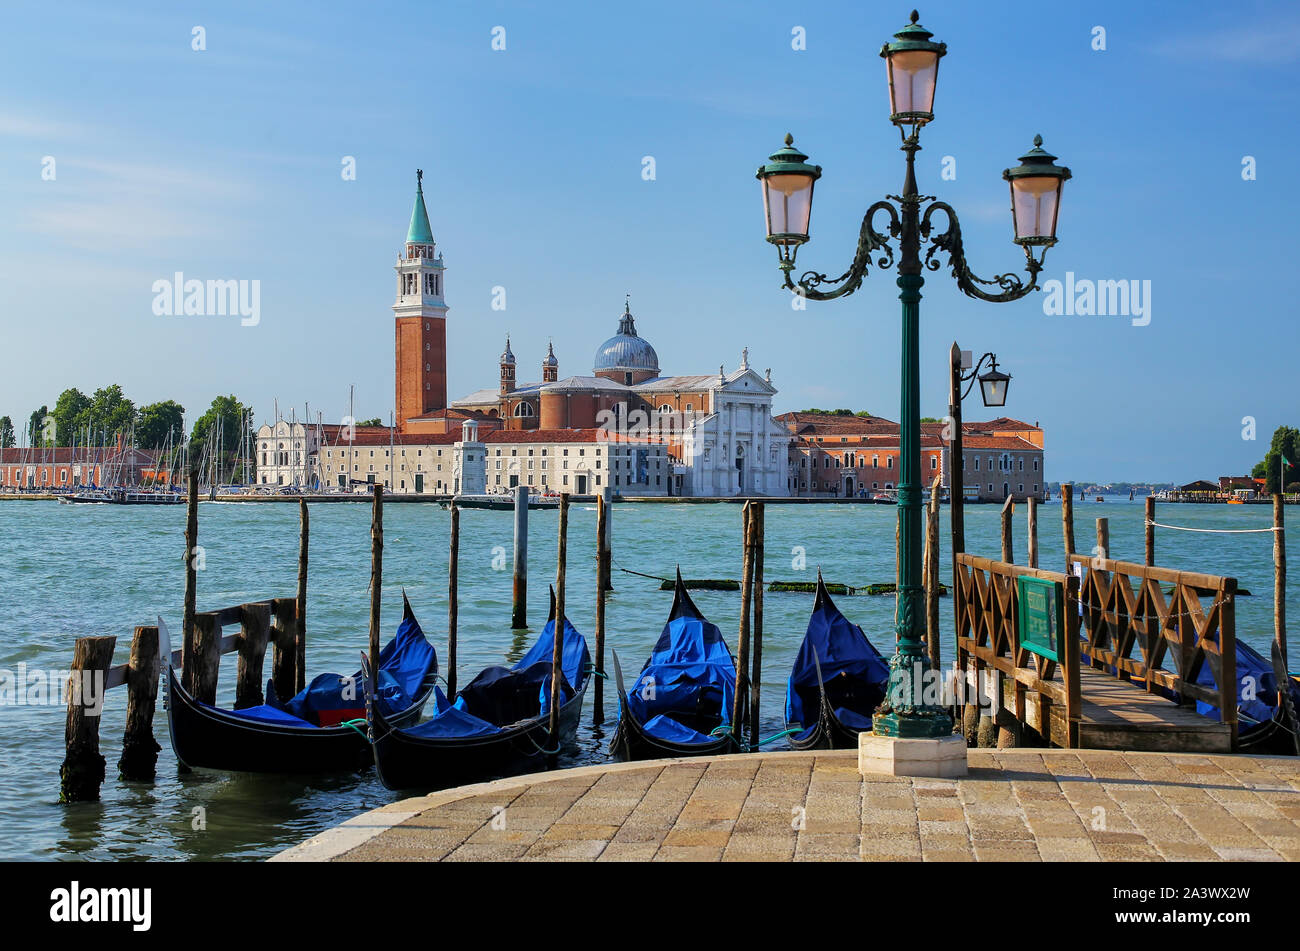 La gondole près de la place San Marco, en face de l'île de San Giorgio Maggiore à Venise, Italie. Gondoles étaient autrefois la principale forme de transport aro Banque D'Images